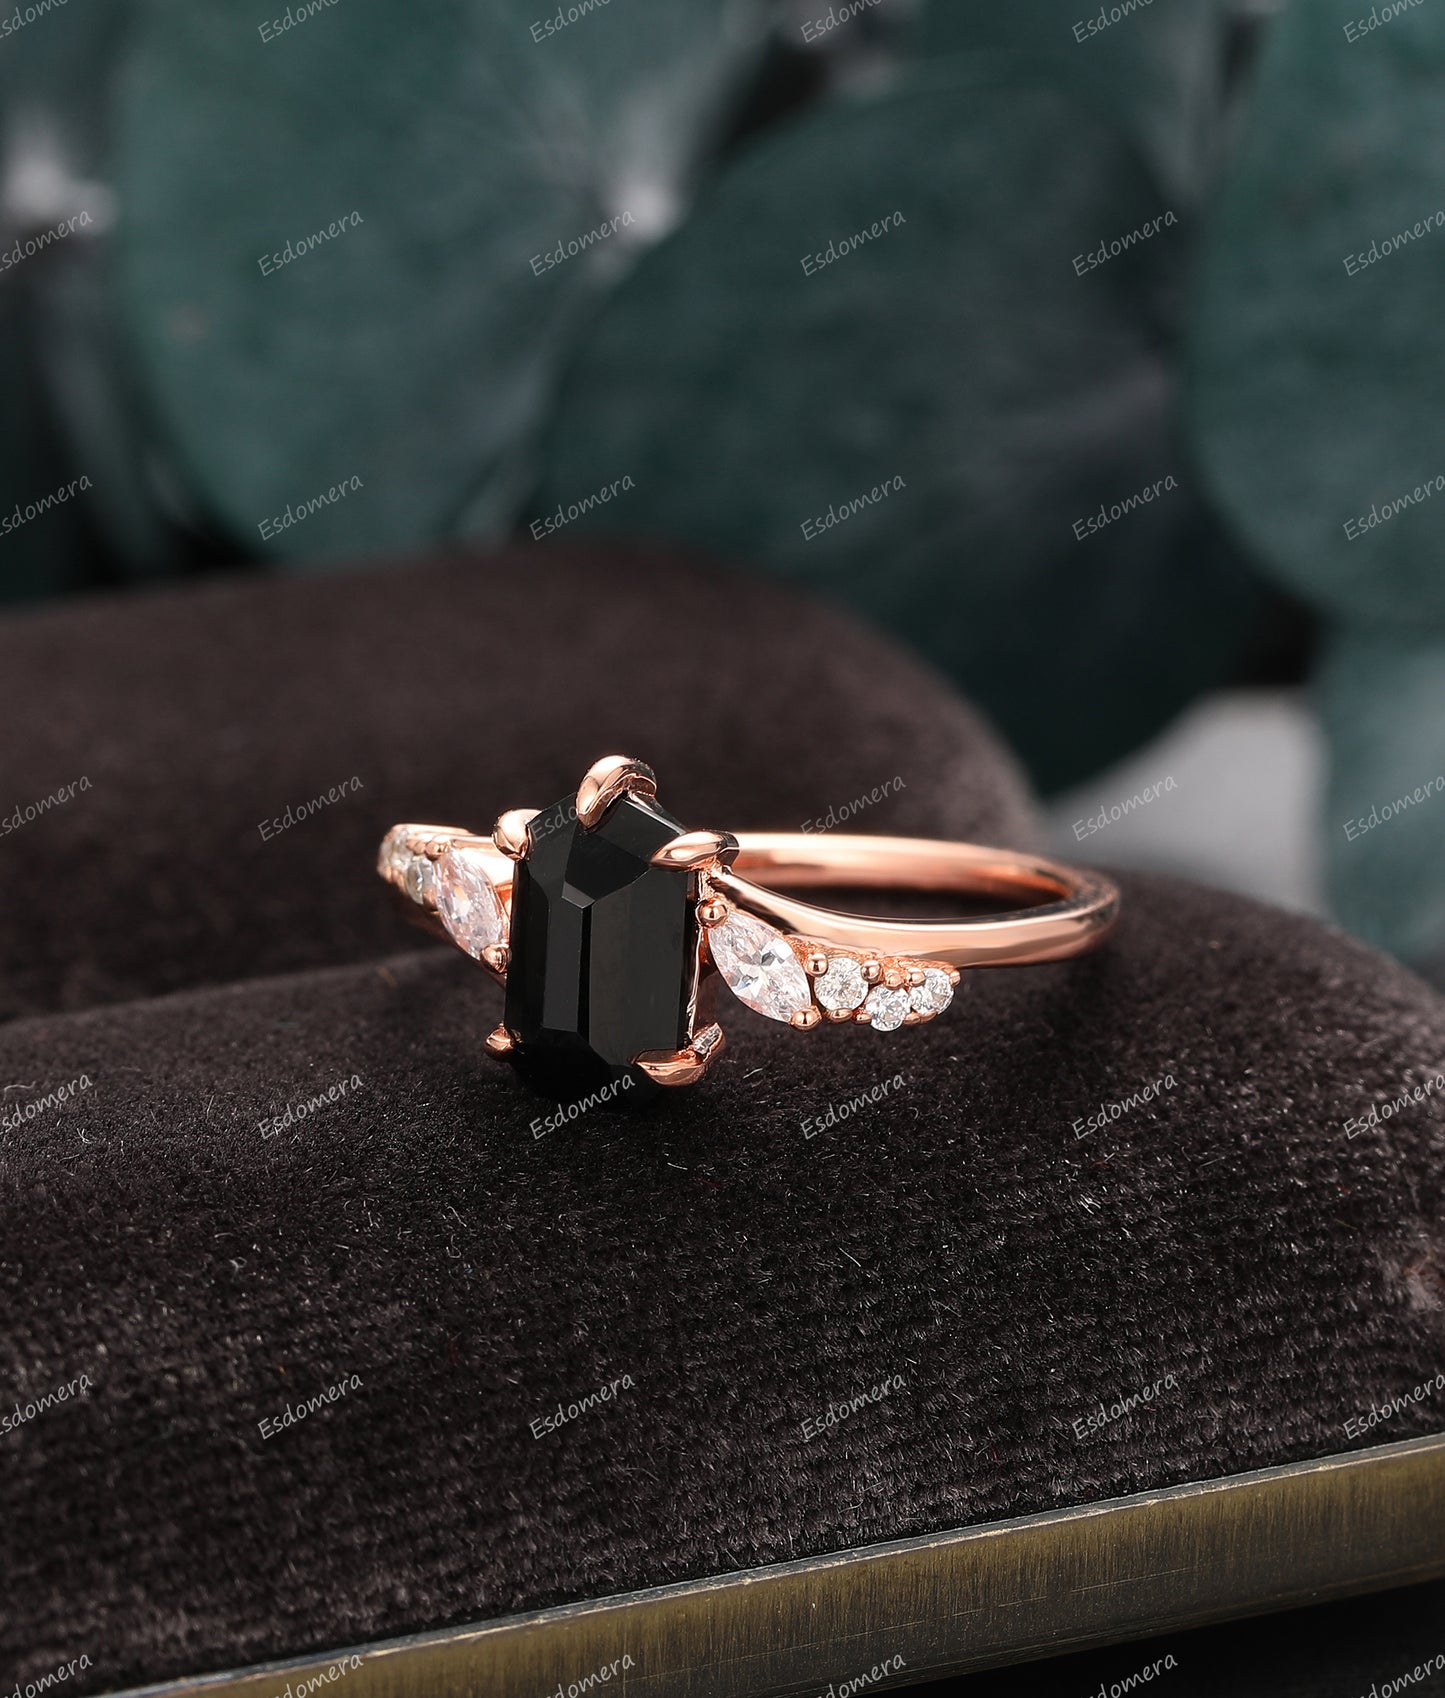 Pentagon Cut 1.15CT Natural Black Onyx Engagement Ring, Moissanite Wedding Ring, 14K Rose Gold Bridal Ring